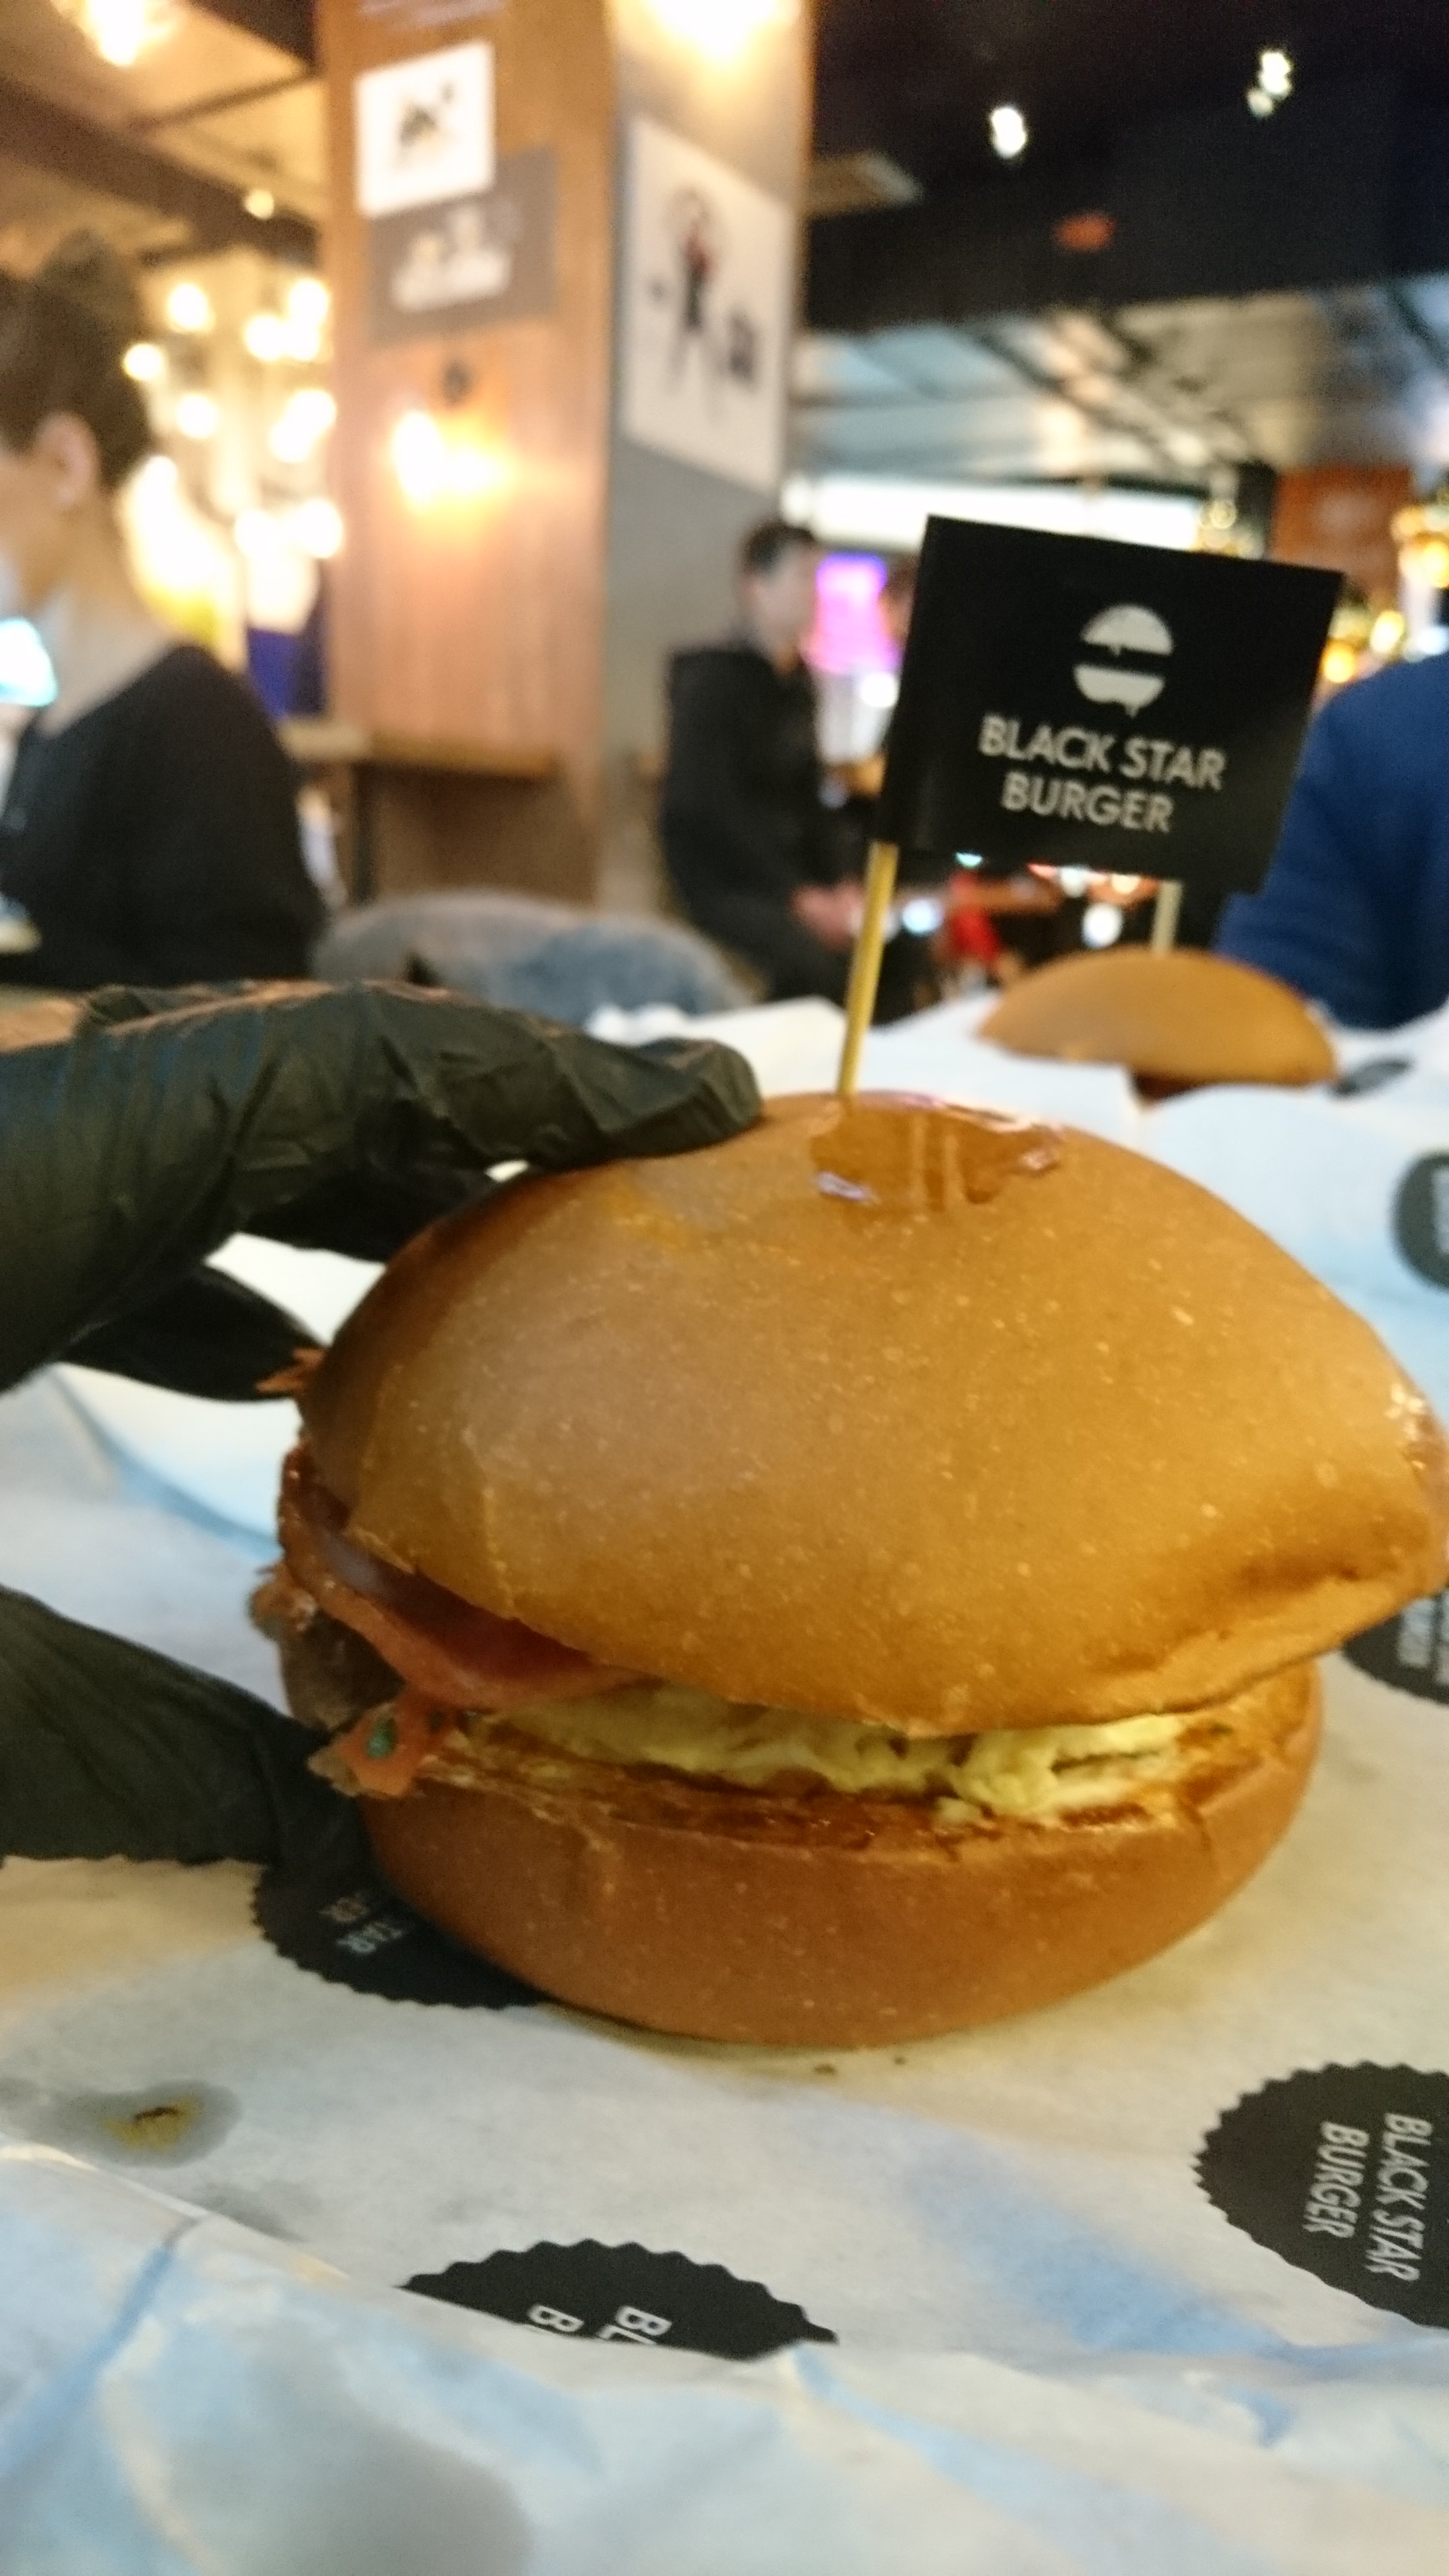 Black star burger, ресторан быстрого питания, площадь Киевского вокзала, 2, 3 этаж